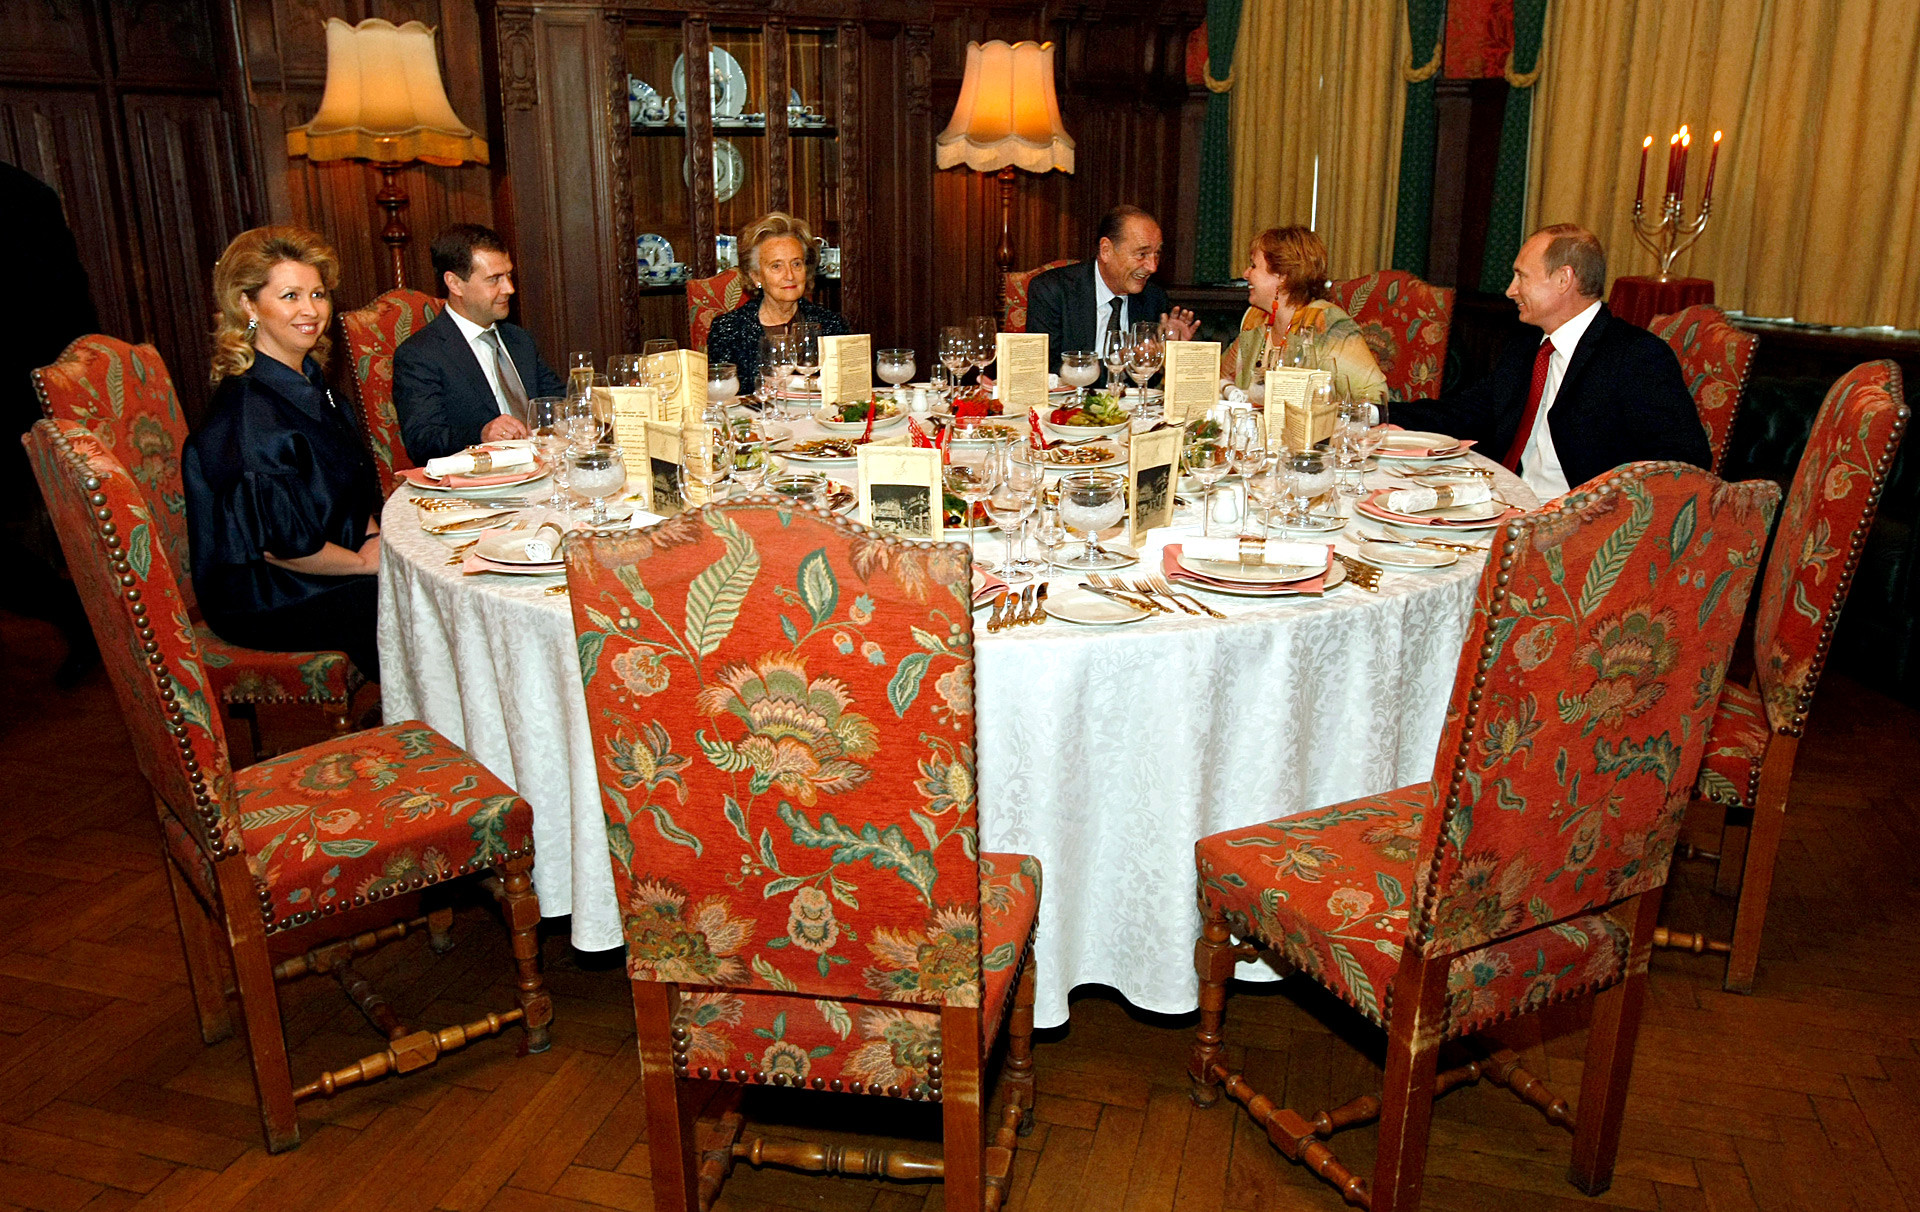 Der russische Regierungschef Wladimir Putin mit seiner Frau Ljudmila, Frankreichs Ex-Präsident Jacques Chirac und seine Frau Bernadette, russischer Präsident  Dmitri Medwedjew mit seiner Frau Swetlana im Moskauer Restaurant 